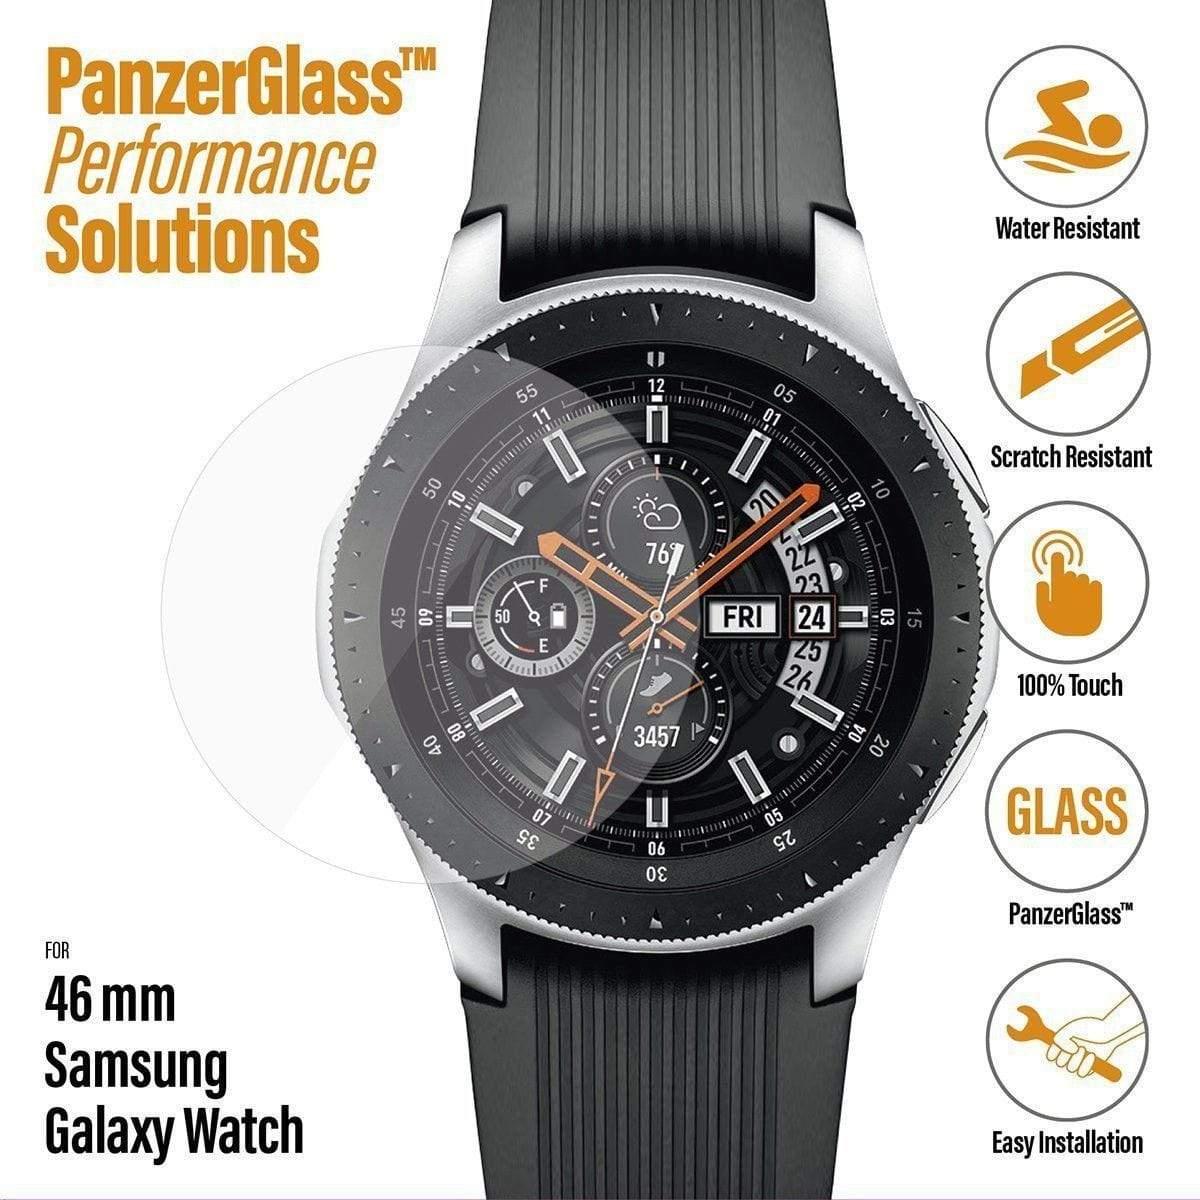 واقي شاشة لساعة سامسونغ Samsung Galaxy Watch Screen Protector 46 mm من PanzerGlass - cG9zdDo1ODA1Ng==